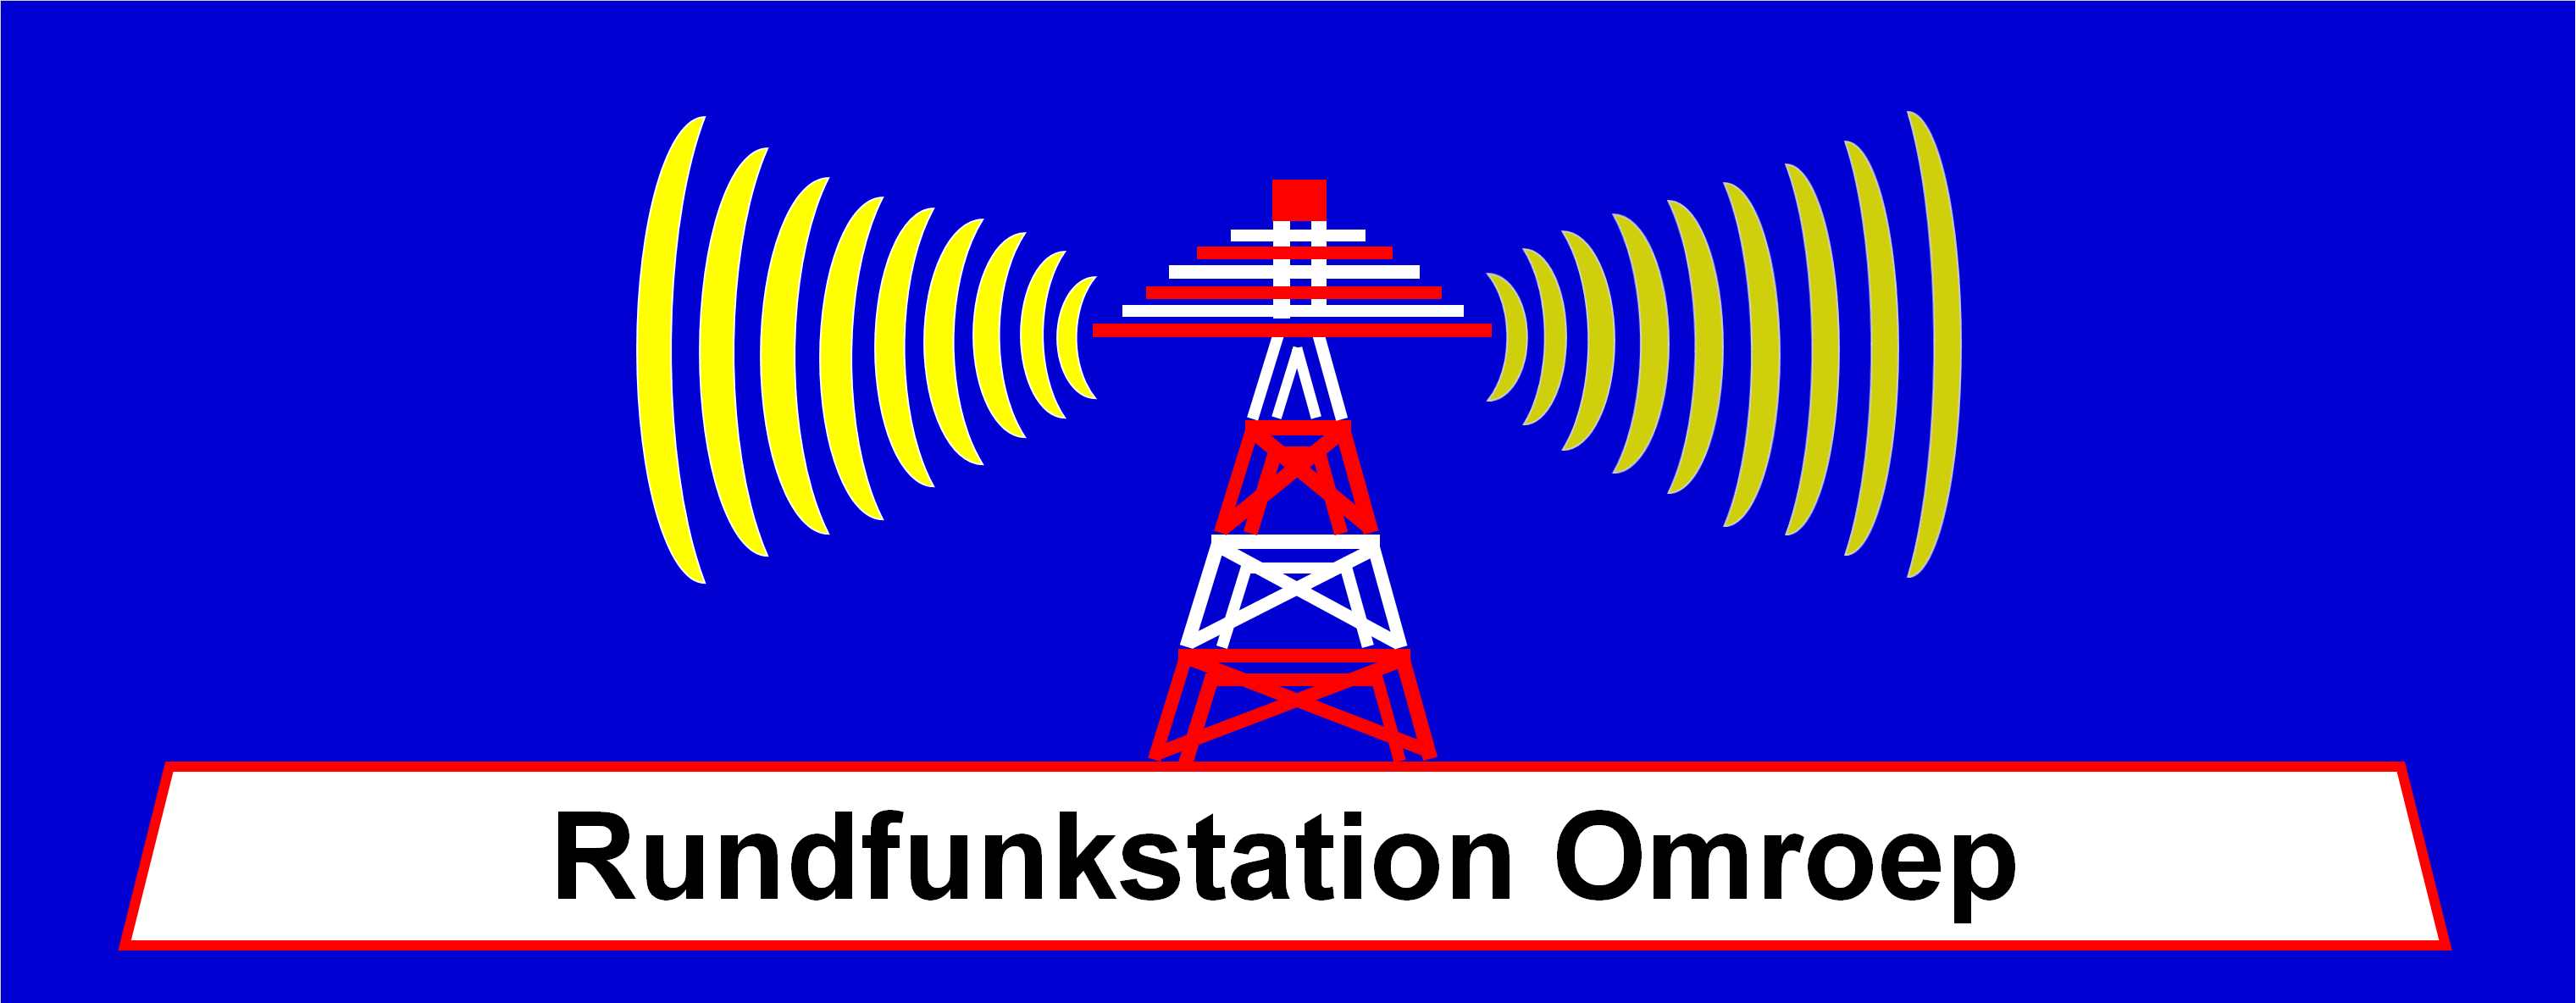 Rundfunkstation Omroep